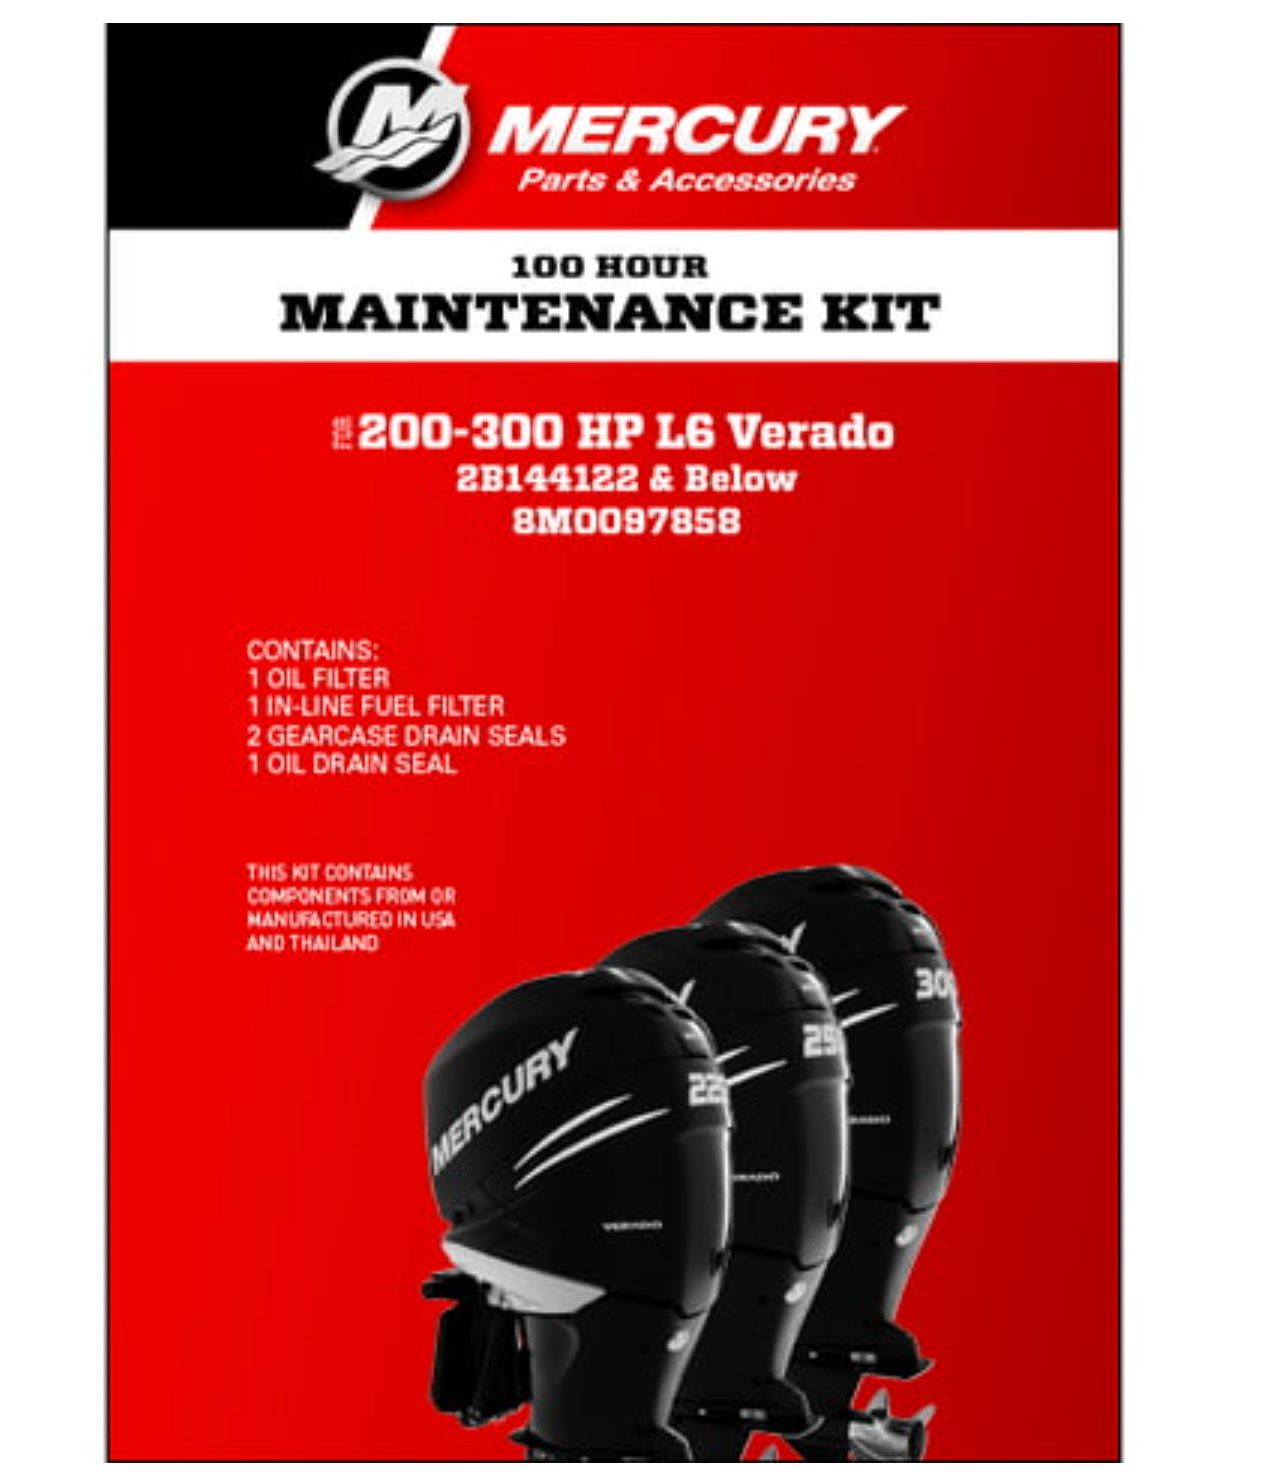 100 Hour Maintenance Kit P/N: 8M0097858